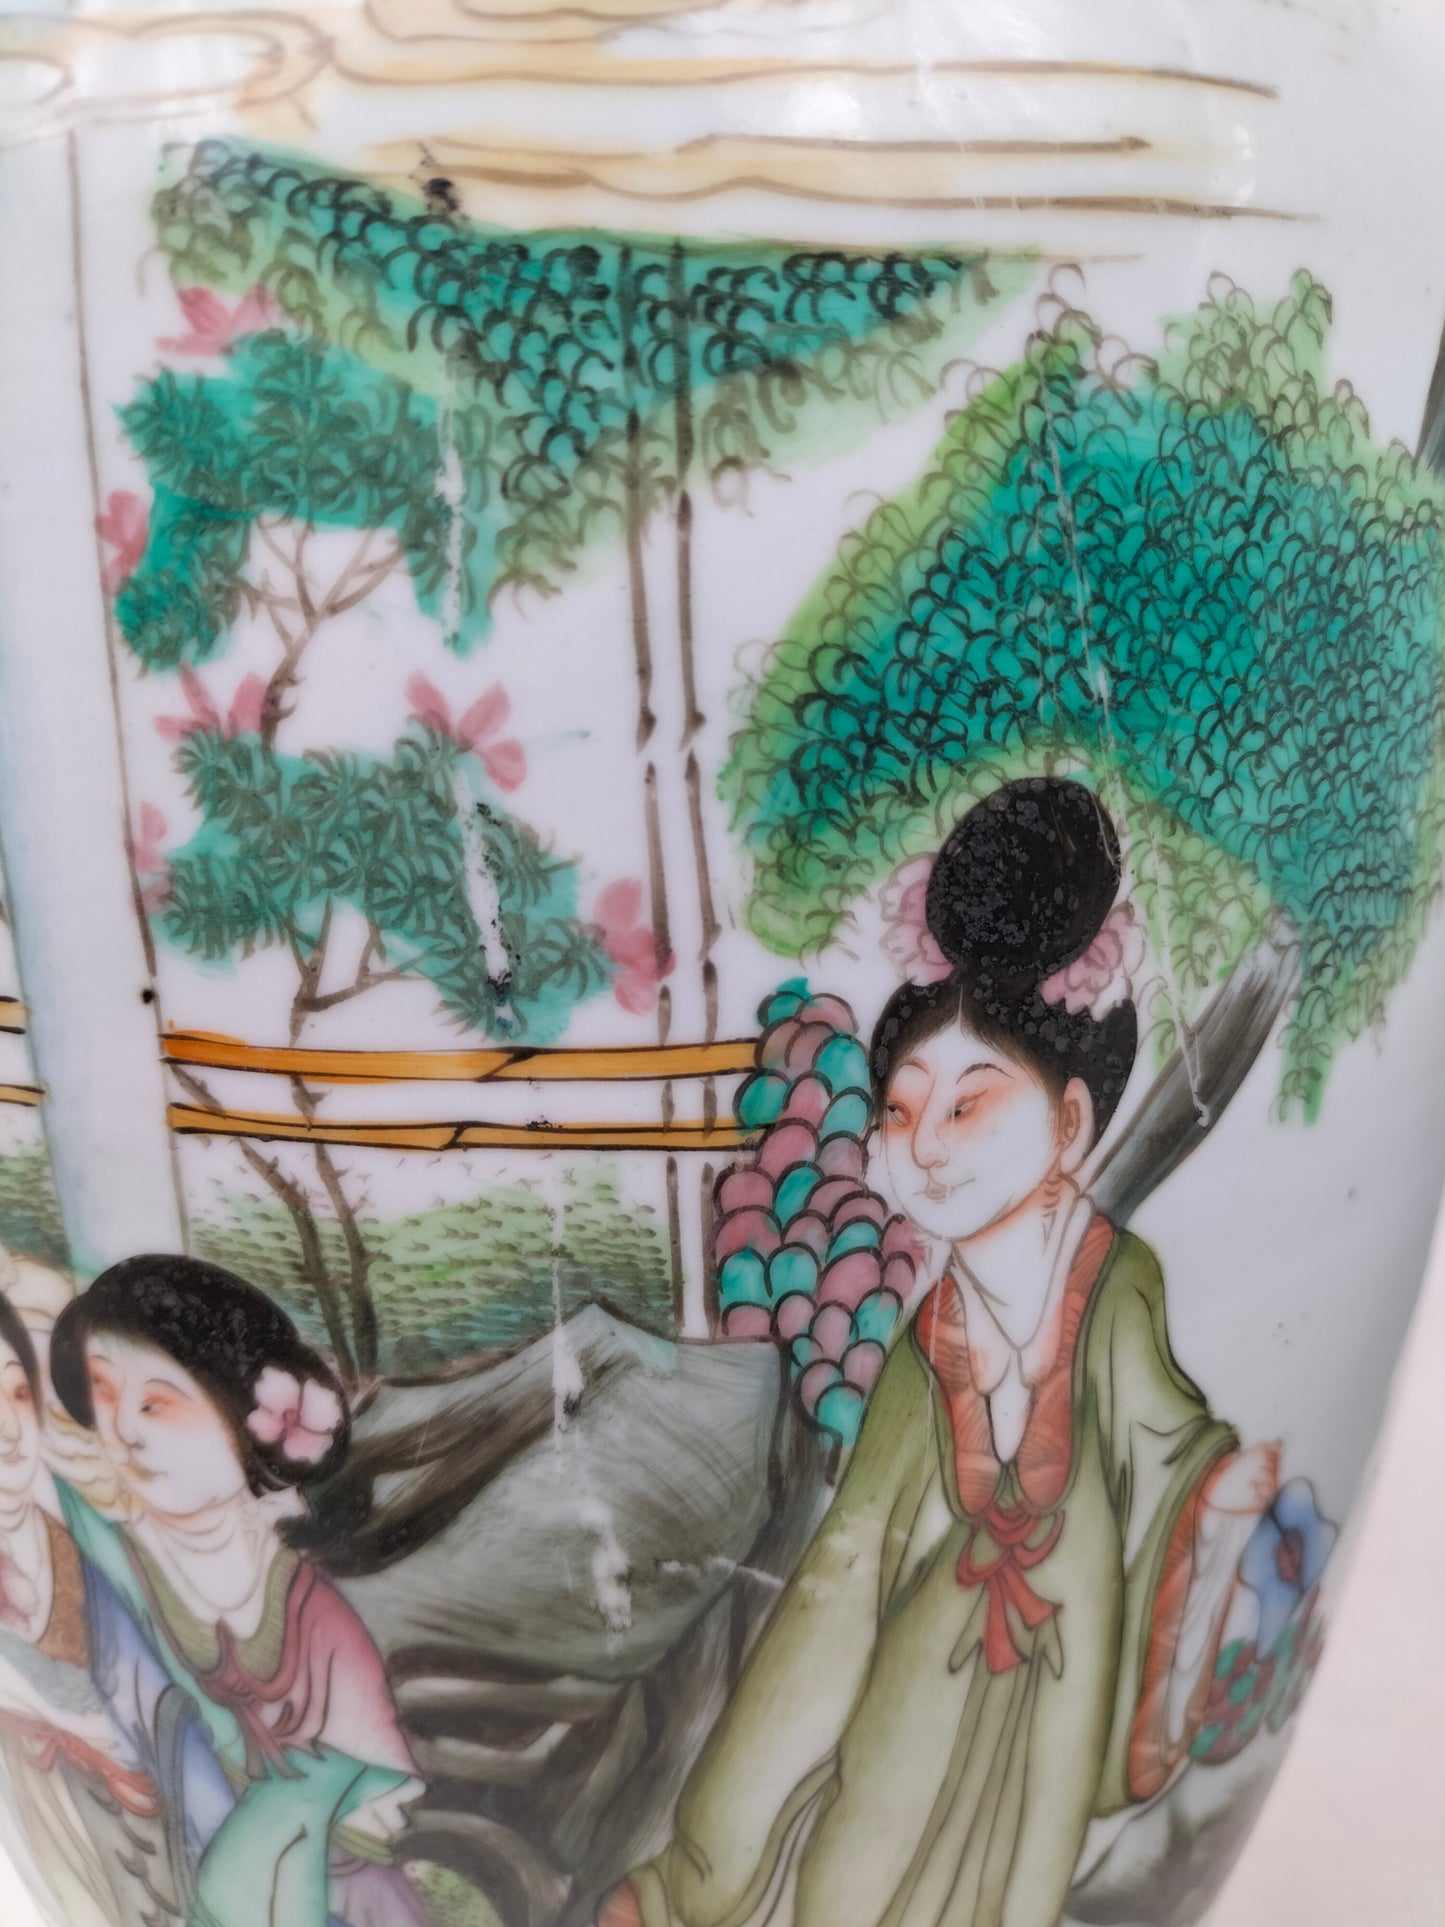 زوج من المزهريات الصينية العتيقة متعددة الألوان والمزخرفة بمنظر الحديقة // فترة الجمهورية (1912-1949)